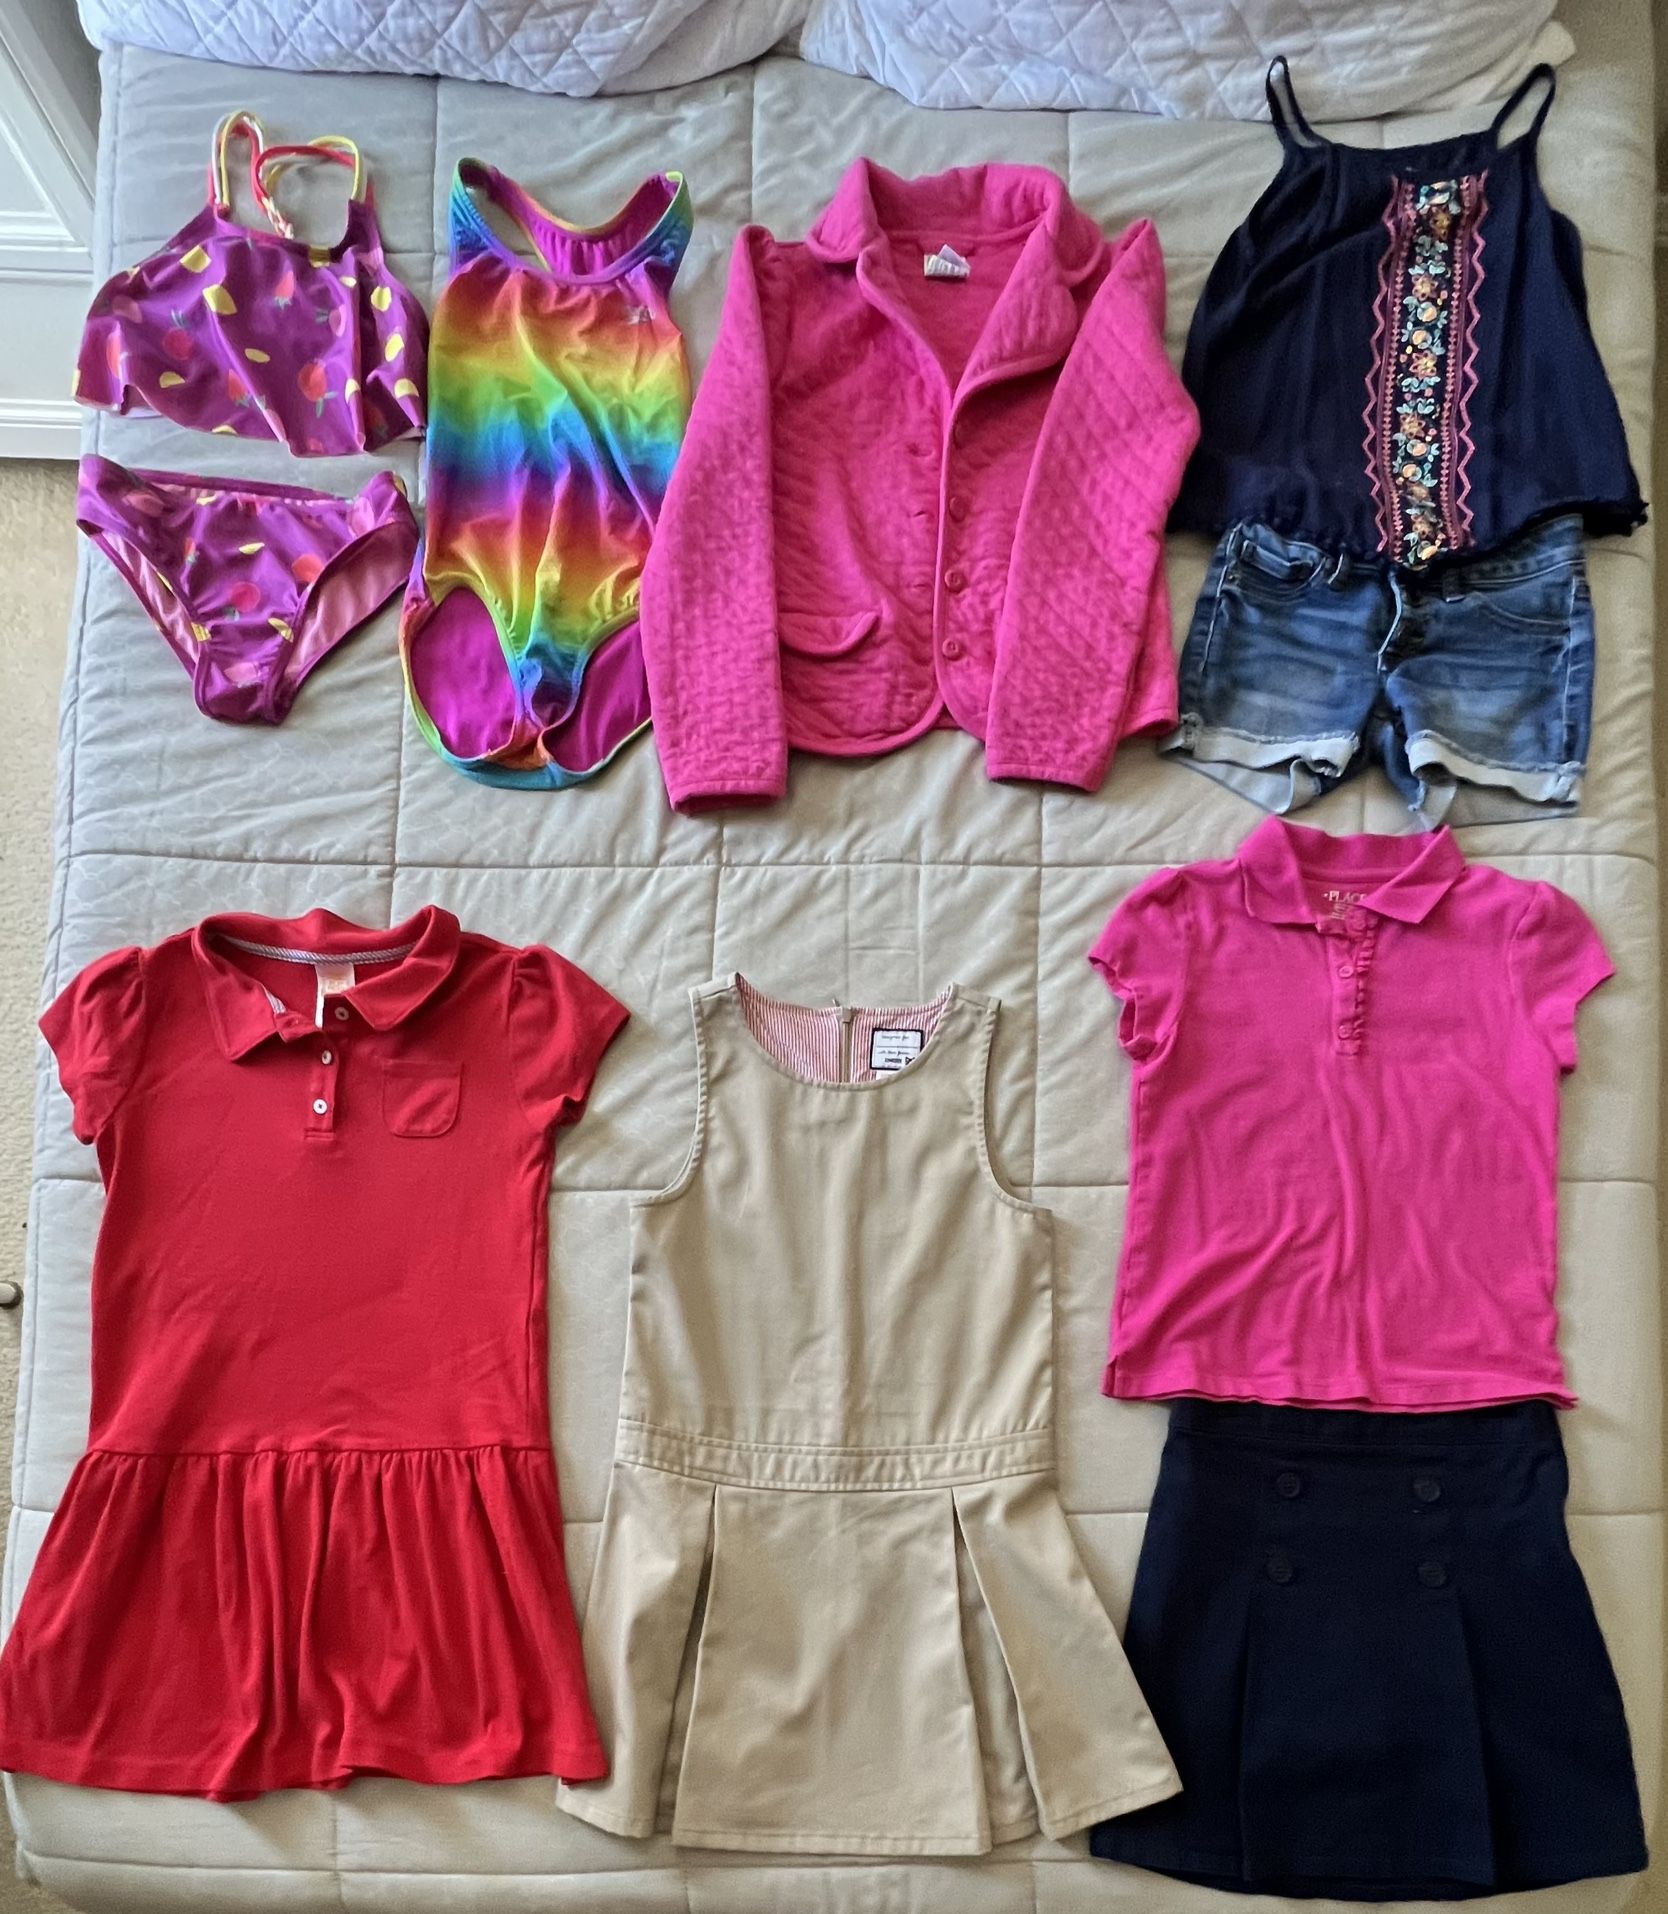 Size M (7/8) Girls Clothing Lot #2